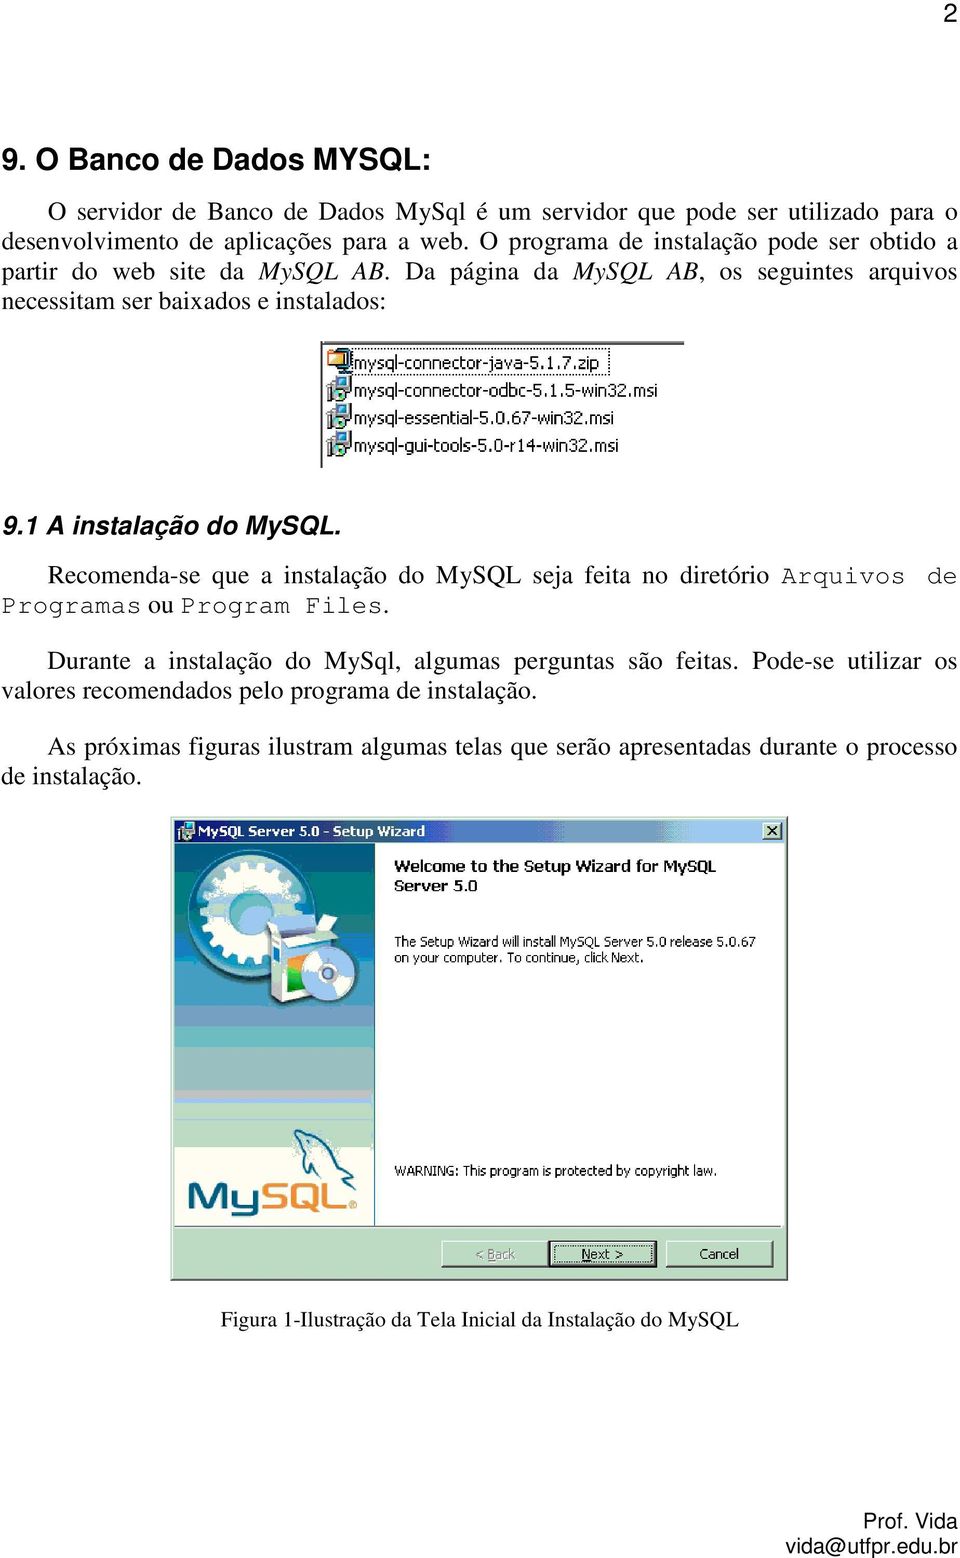 1 A instalação do MySQL. Recomenda-se que a instalação do MySQL seja feita no diretório Arquivos de Programas ou Program Files.